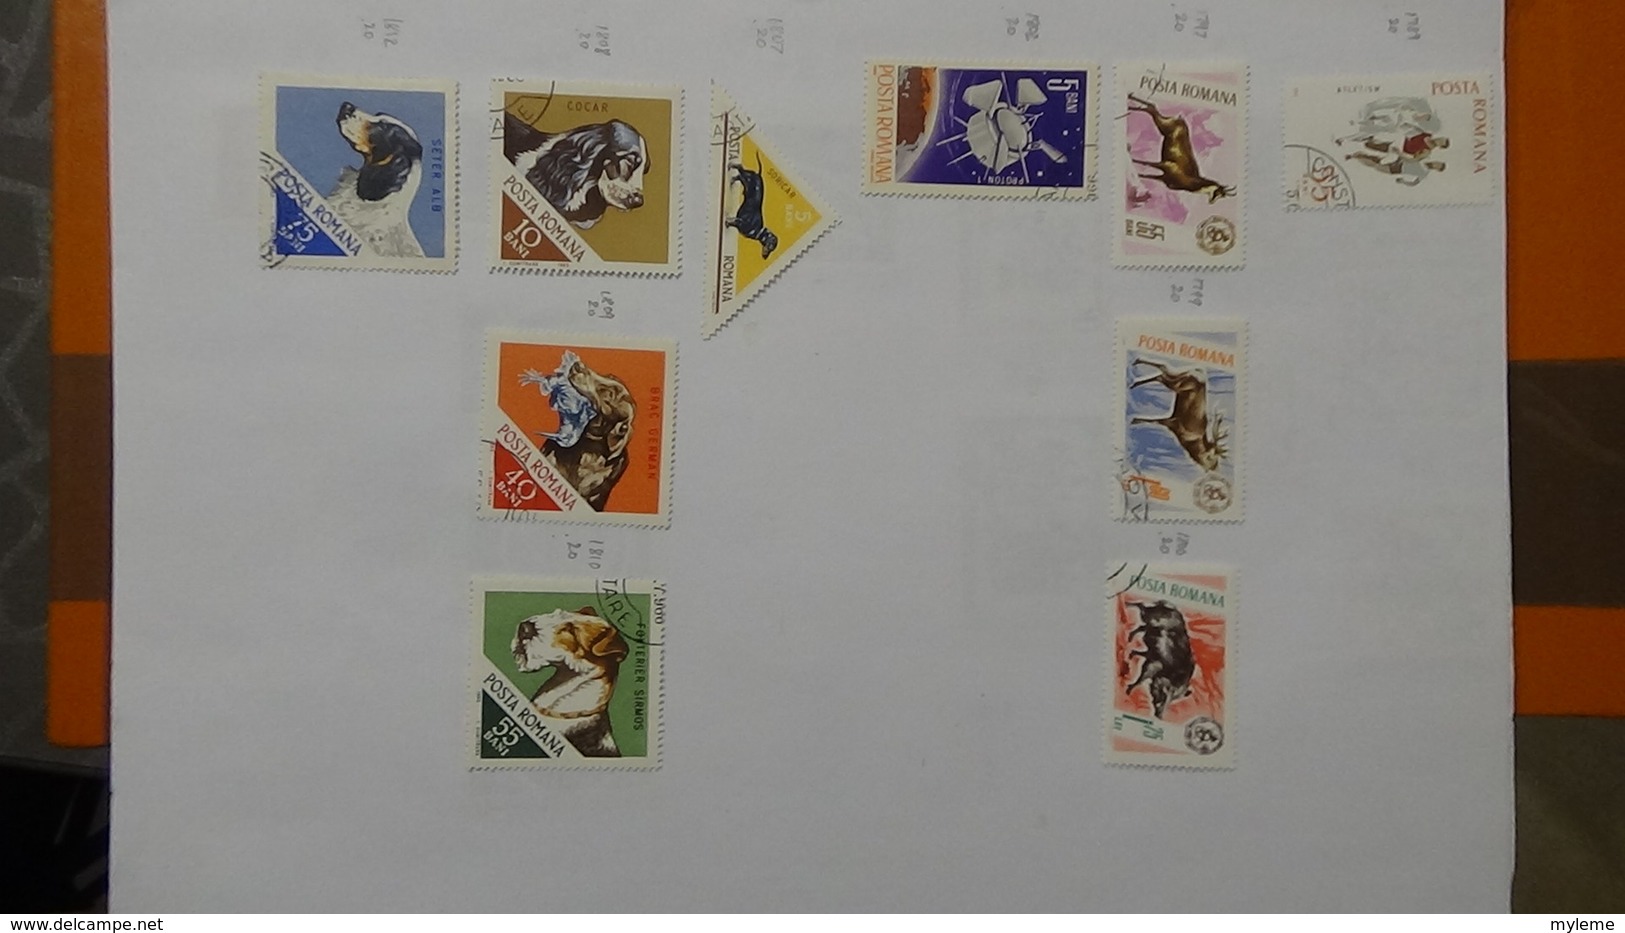 A241 Cahier de timbres de Roumanie dont fin de catalogue. A saisir !!! Voir commentaires